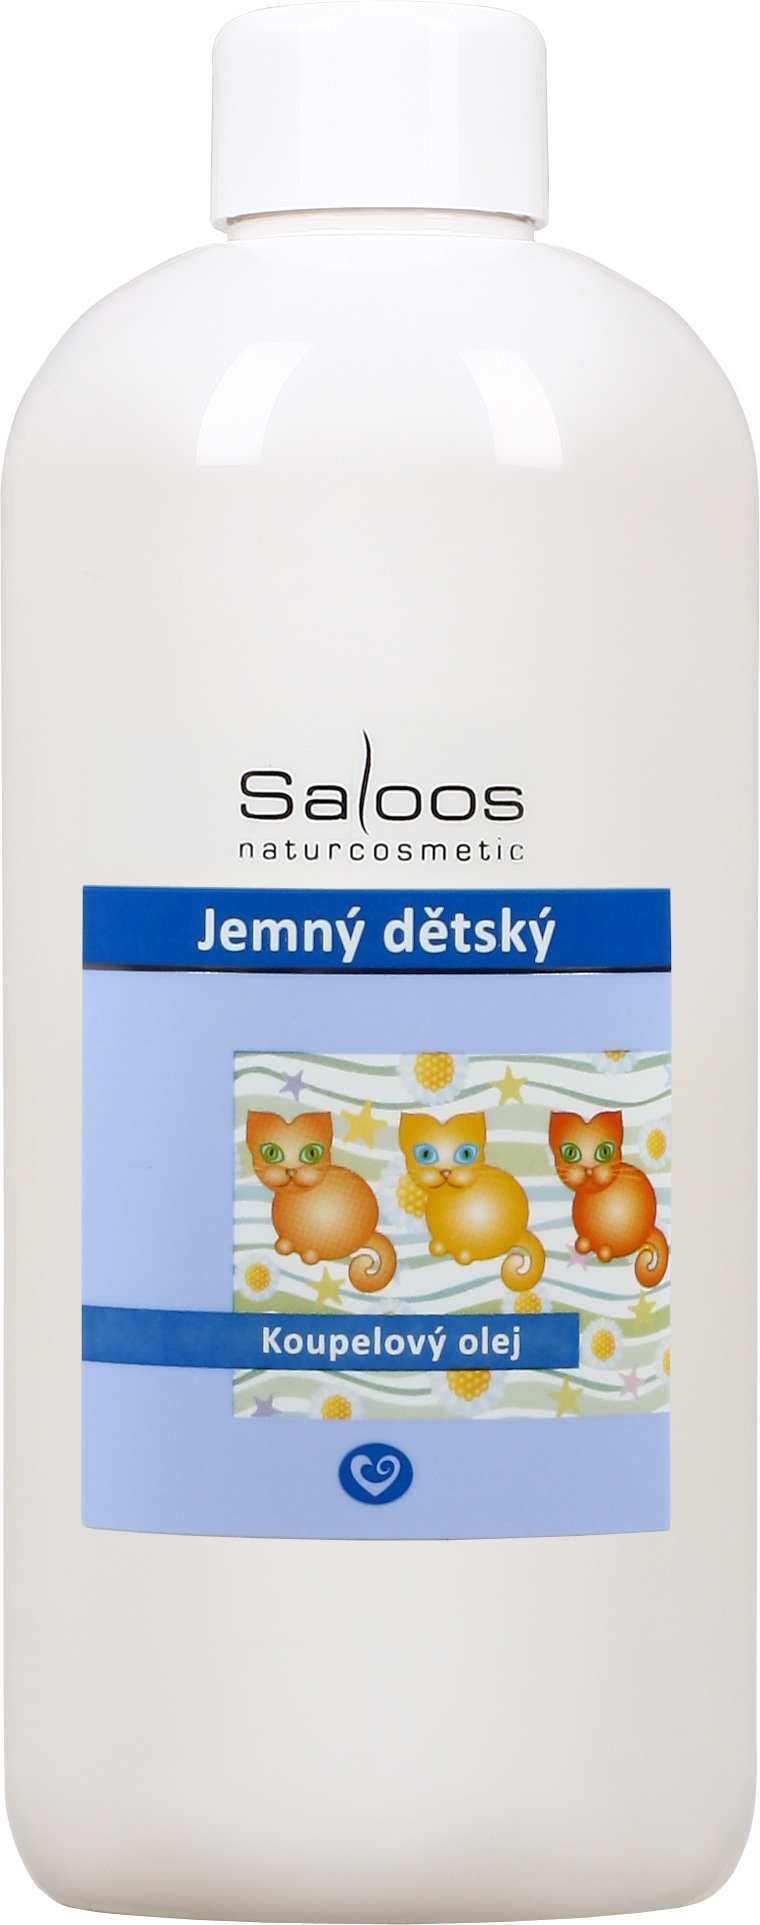 Saloos Jemný dětský - koupelový olej Balení: 250 ml